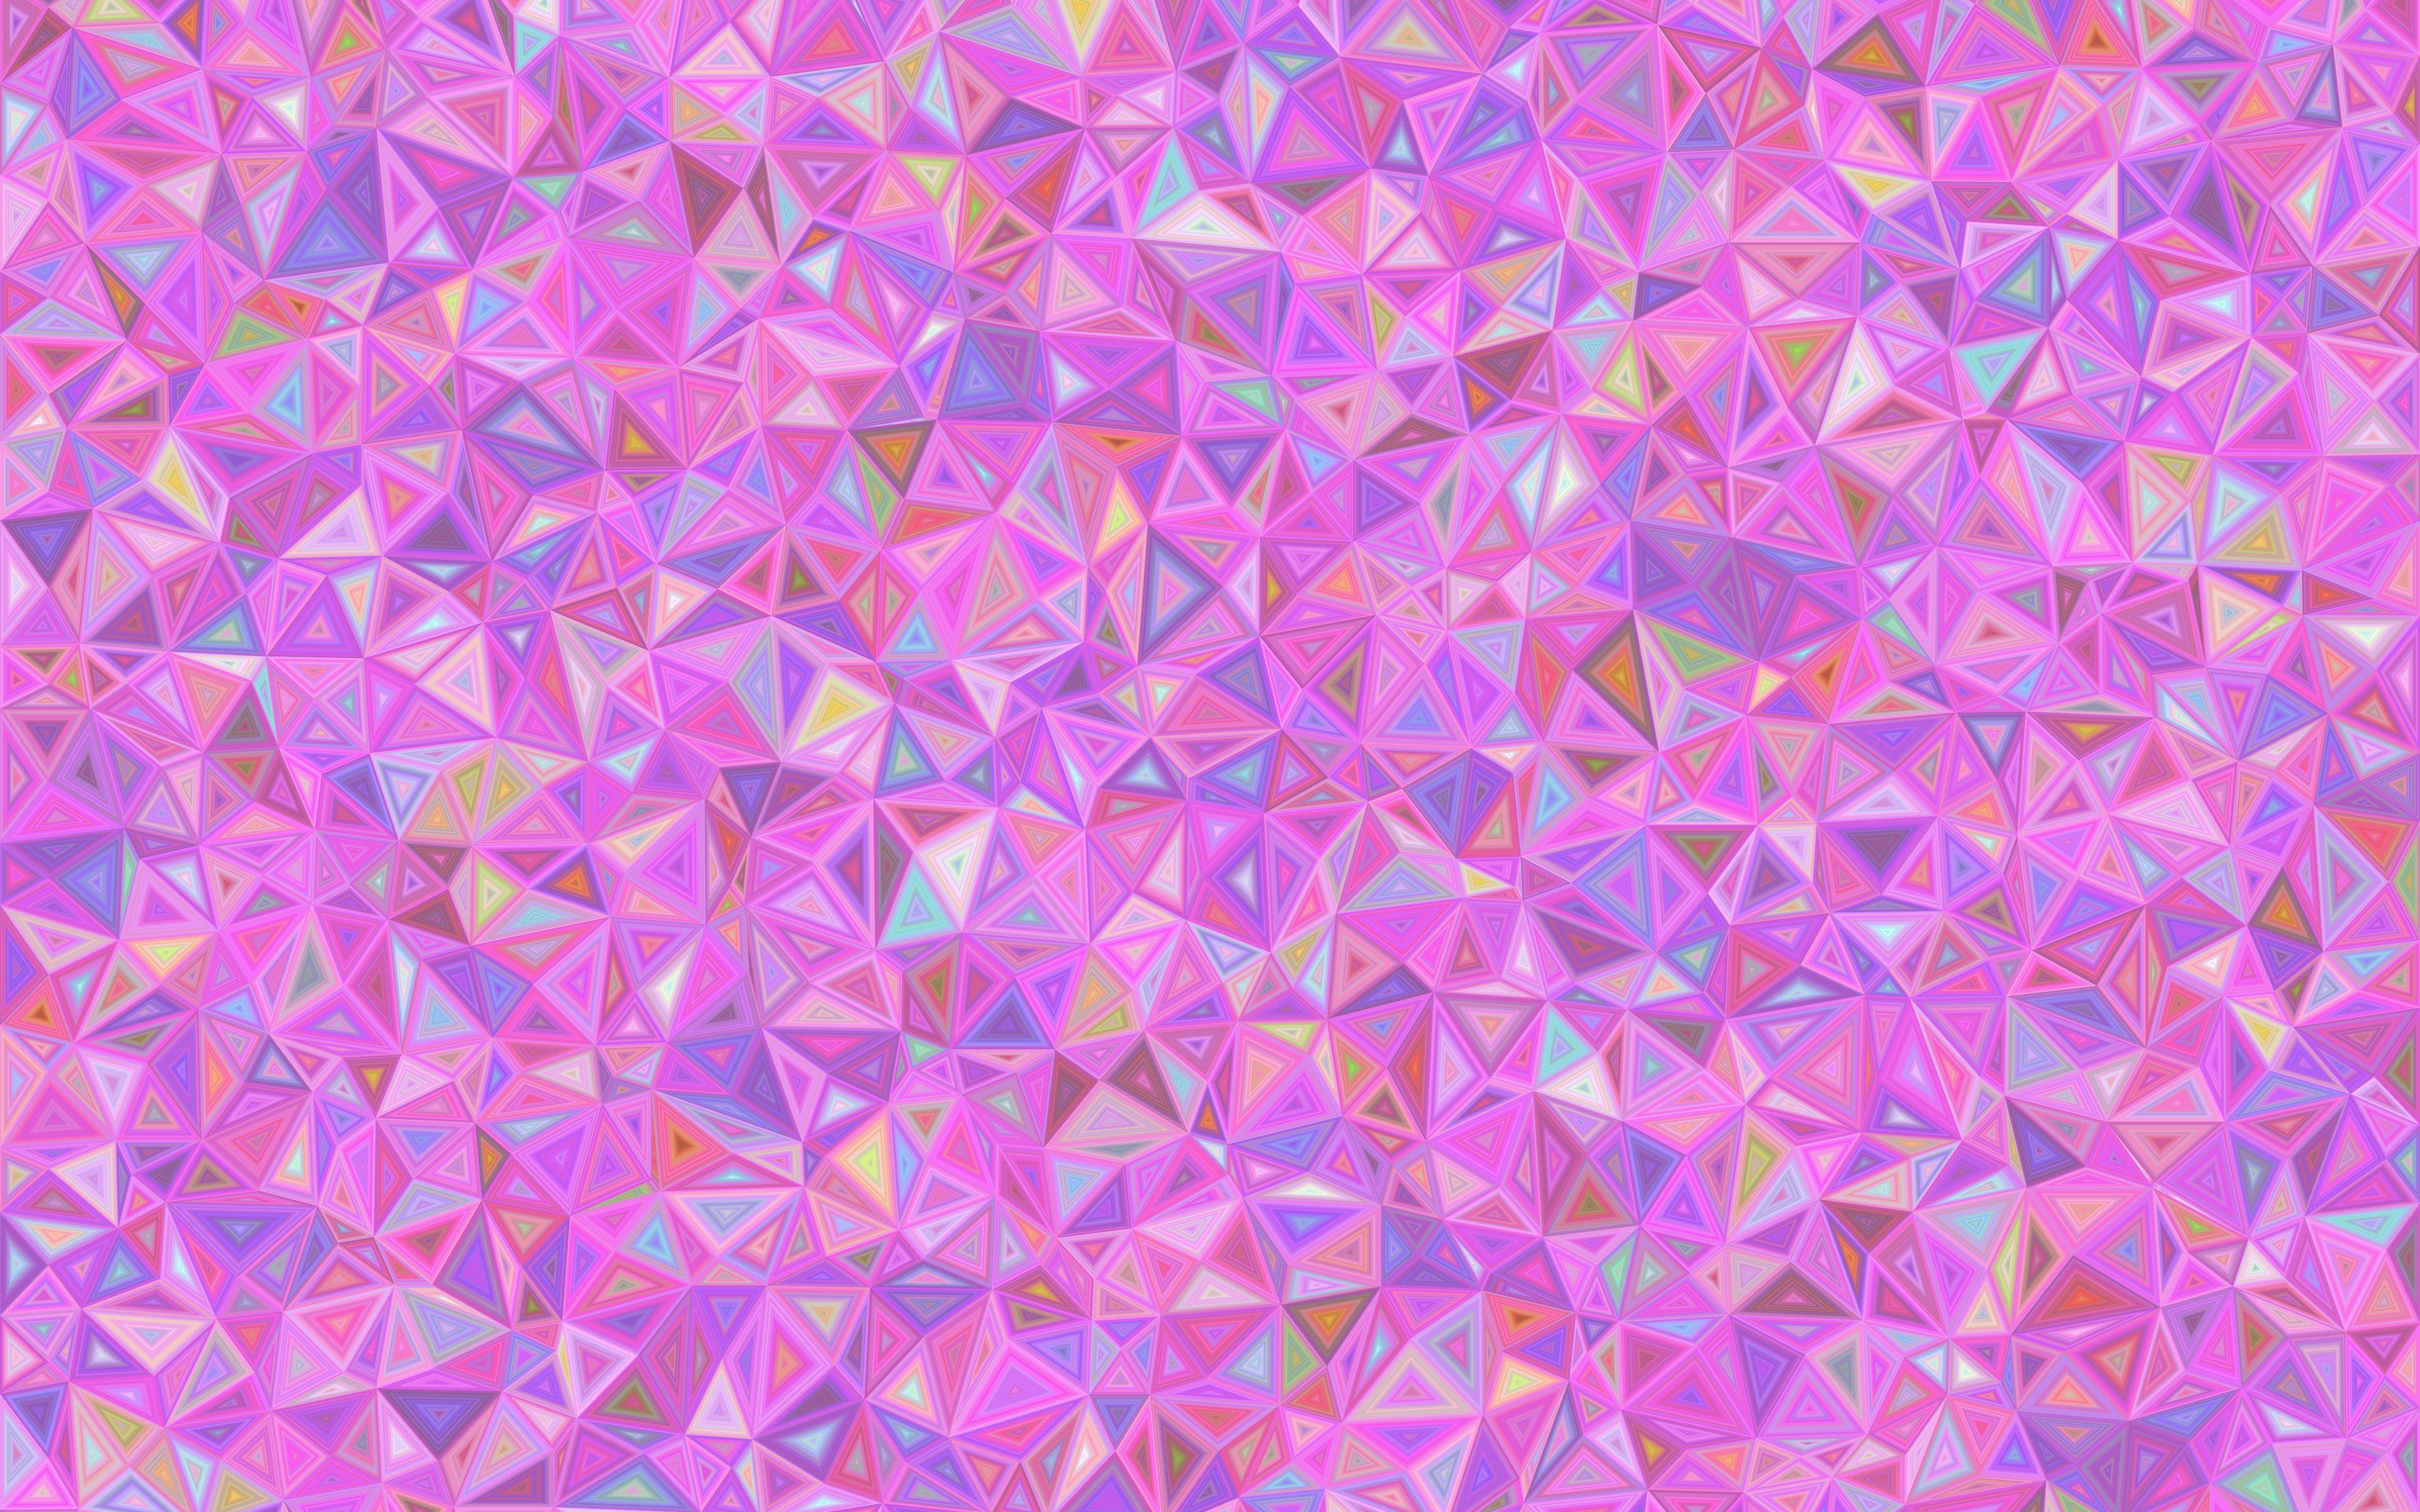 3840x2400 мозаика, треугольники, розовый, хаотичный обои 4k ultra hd 16:10.